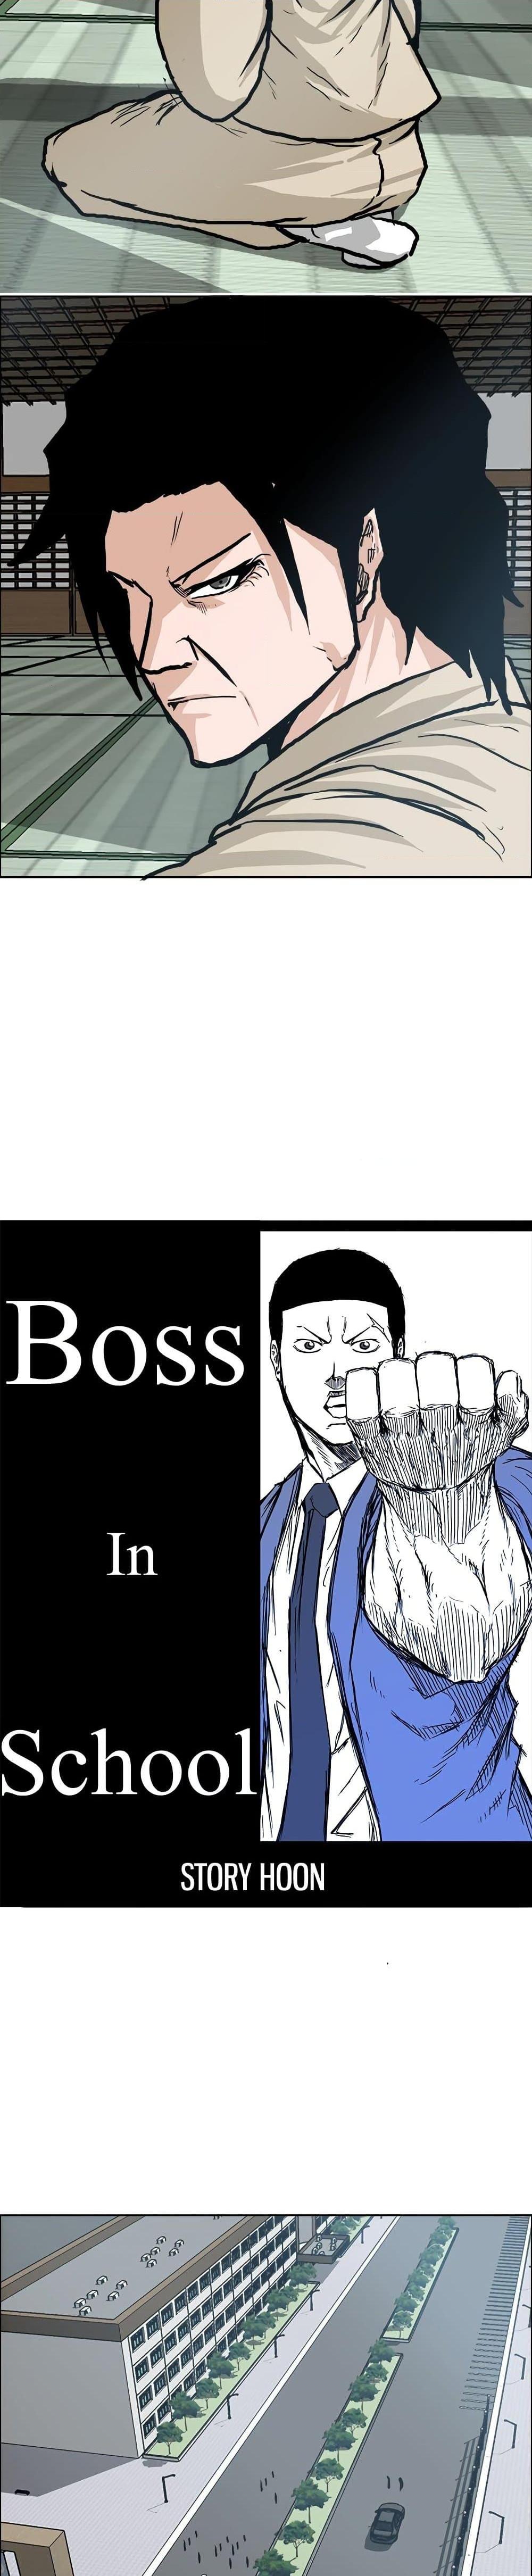 Boss in School 76 17